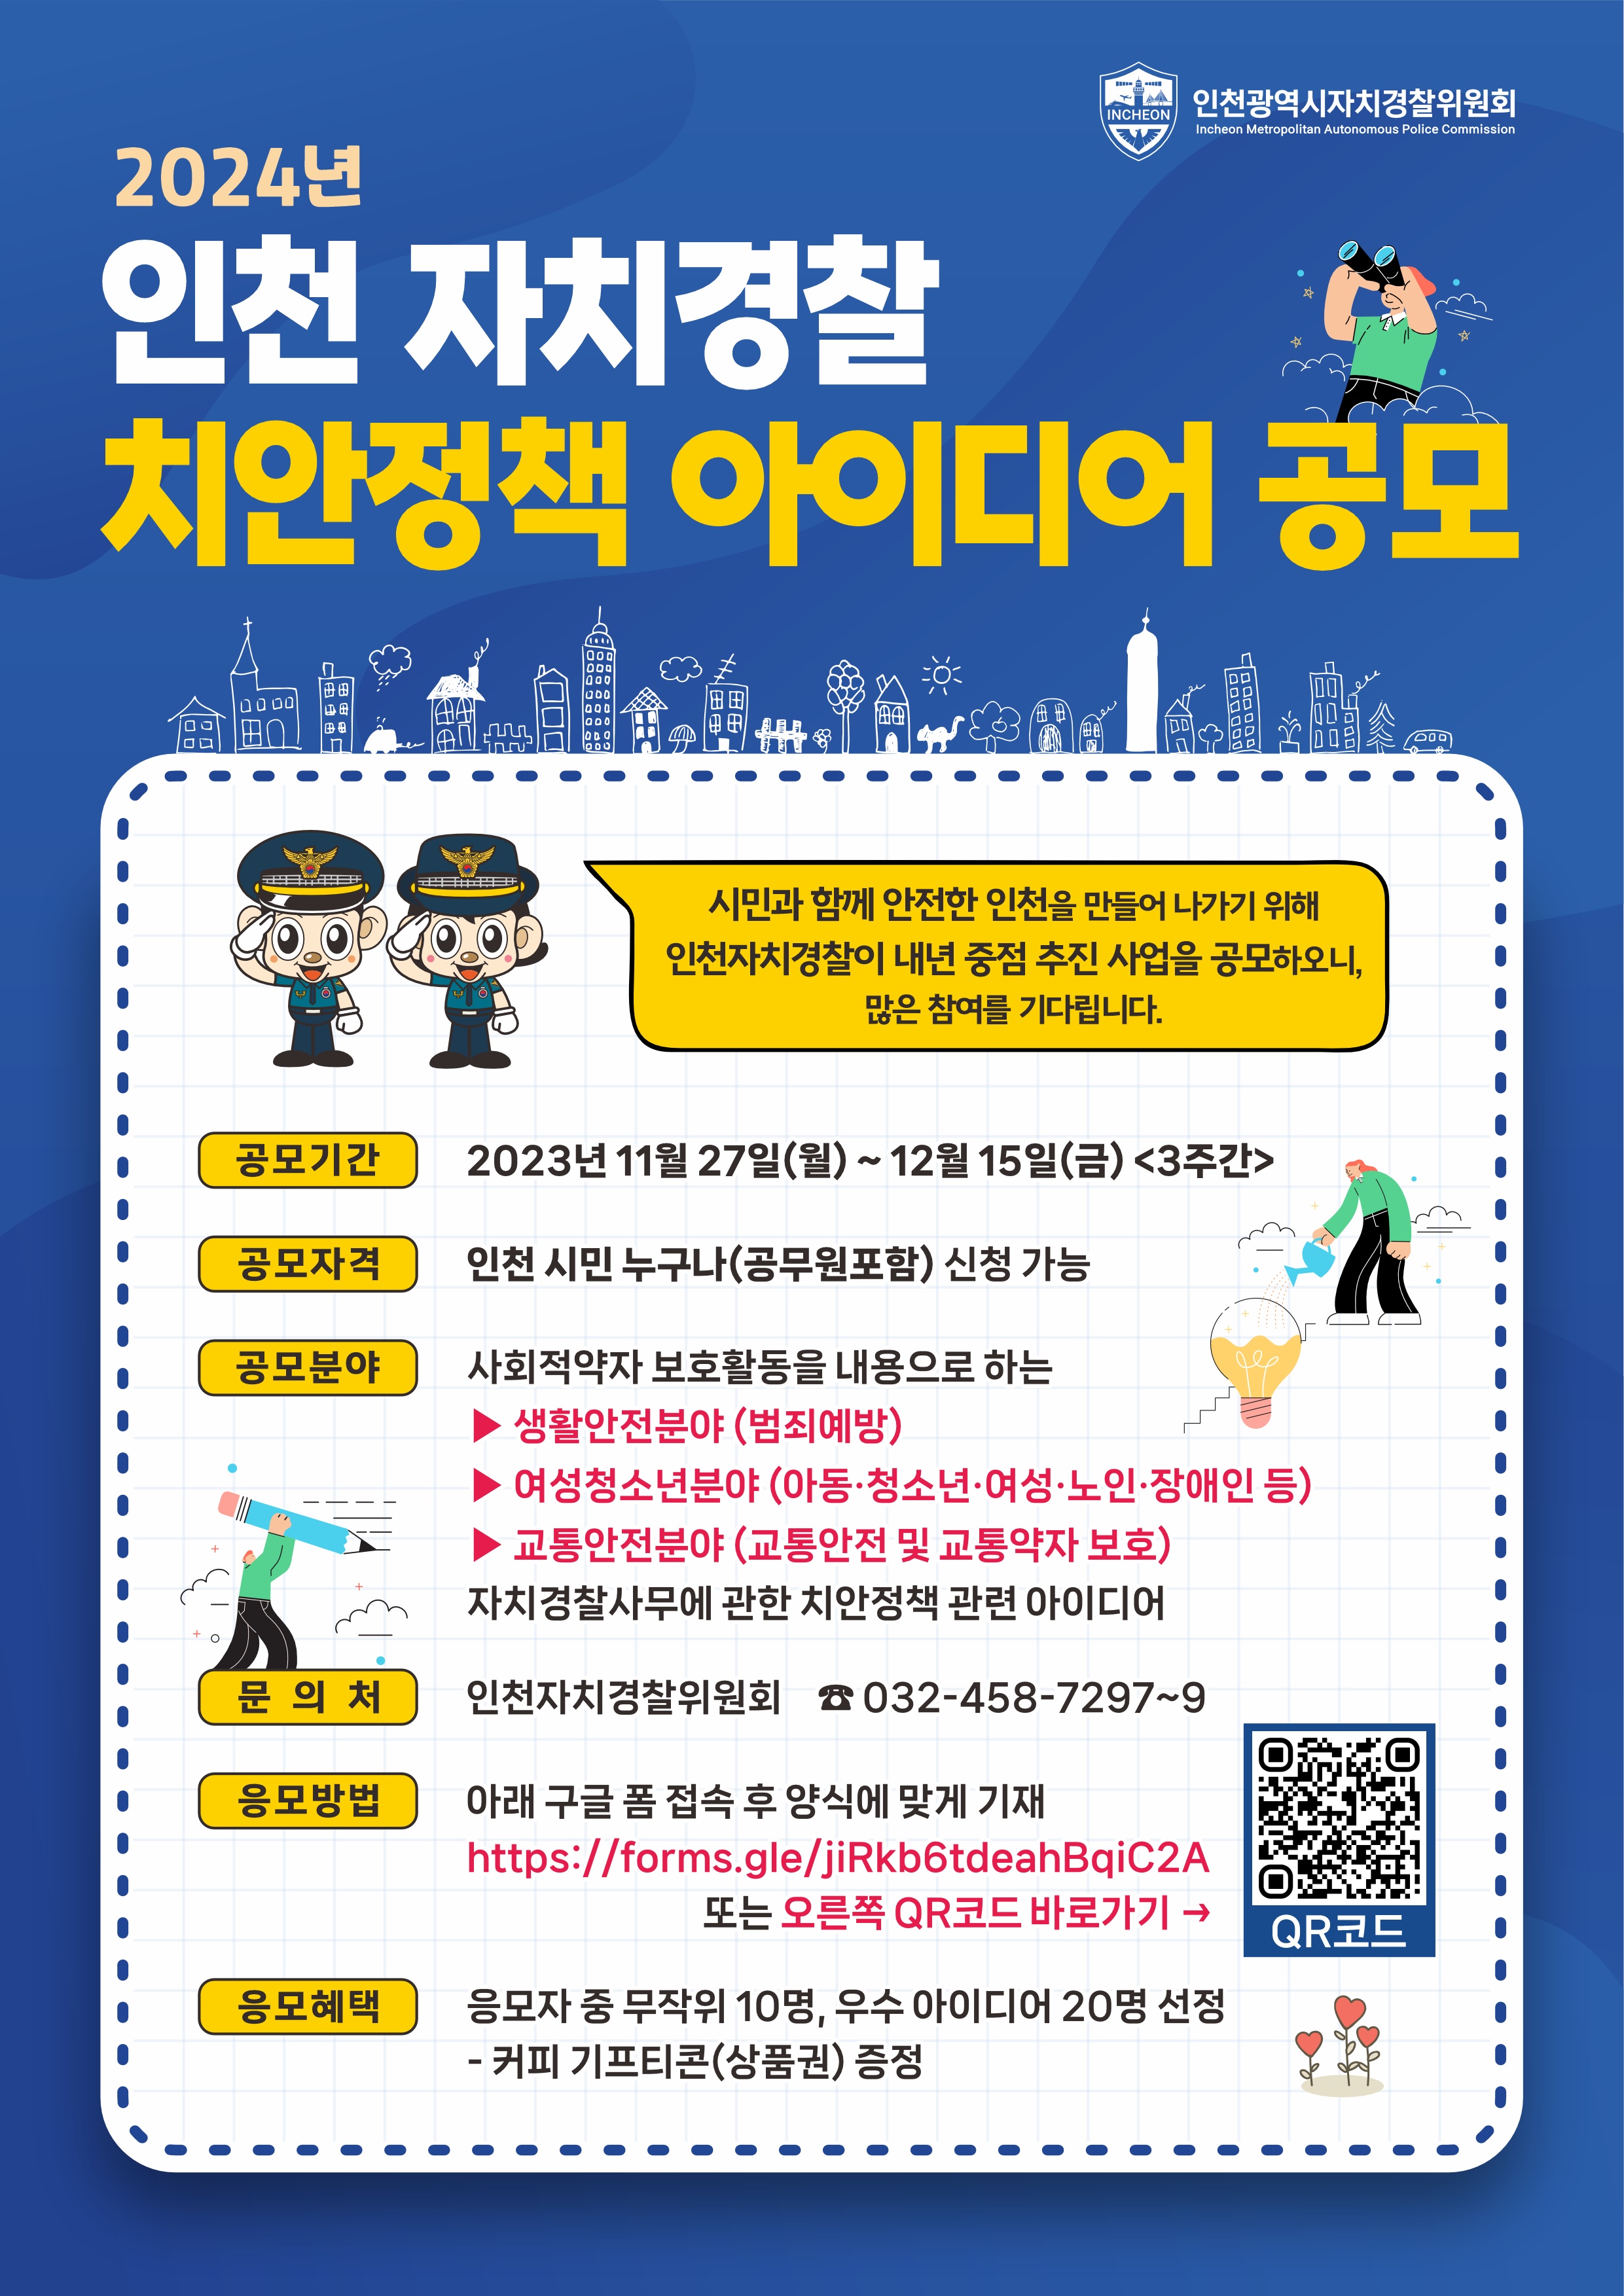 2024년 인천 자치경찰 치안정책 아이디어 공모의 1번째 이미지